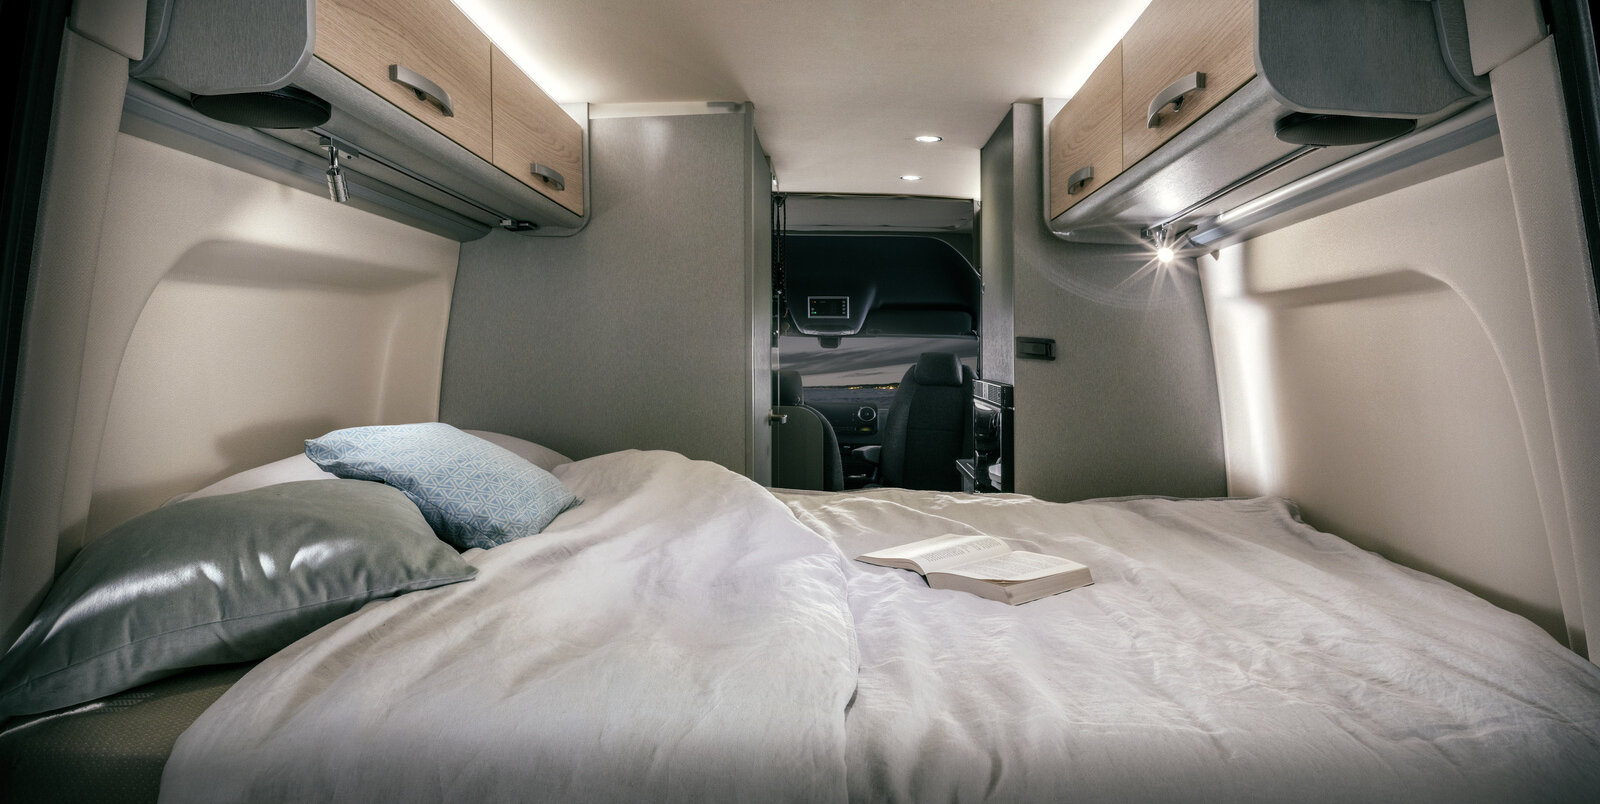 Cama cubierta con almohadas, libro abierto, luces de lectura, armarios superiores en la parte trasera del HYMER Free S 600